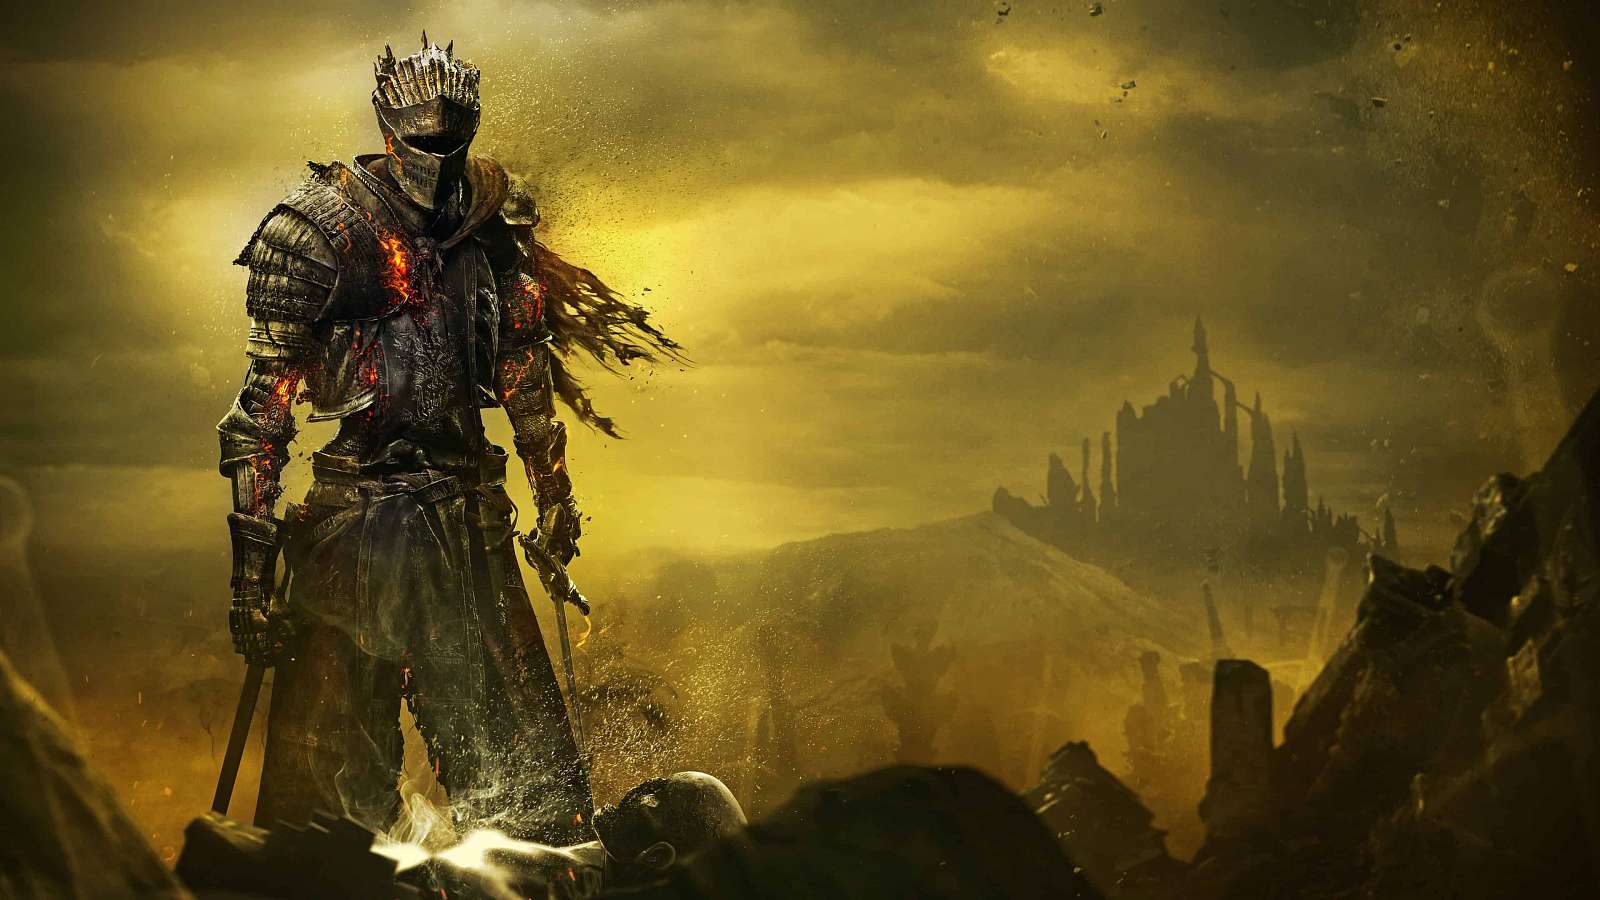 Nehrajte online režim Dark Souls 3, obsahuje kritický bezpečnostní problém